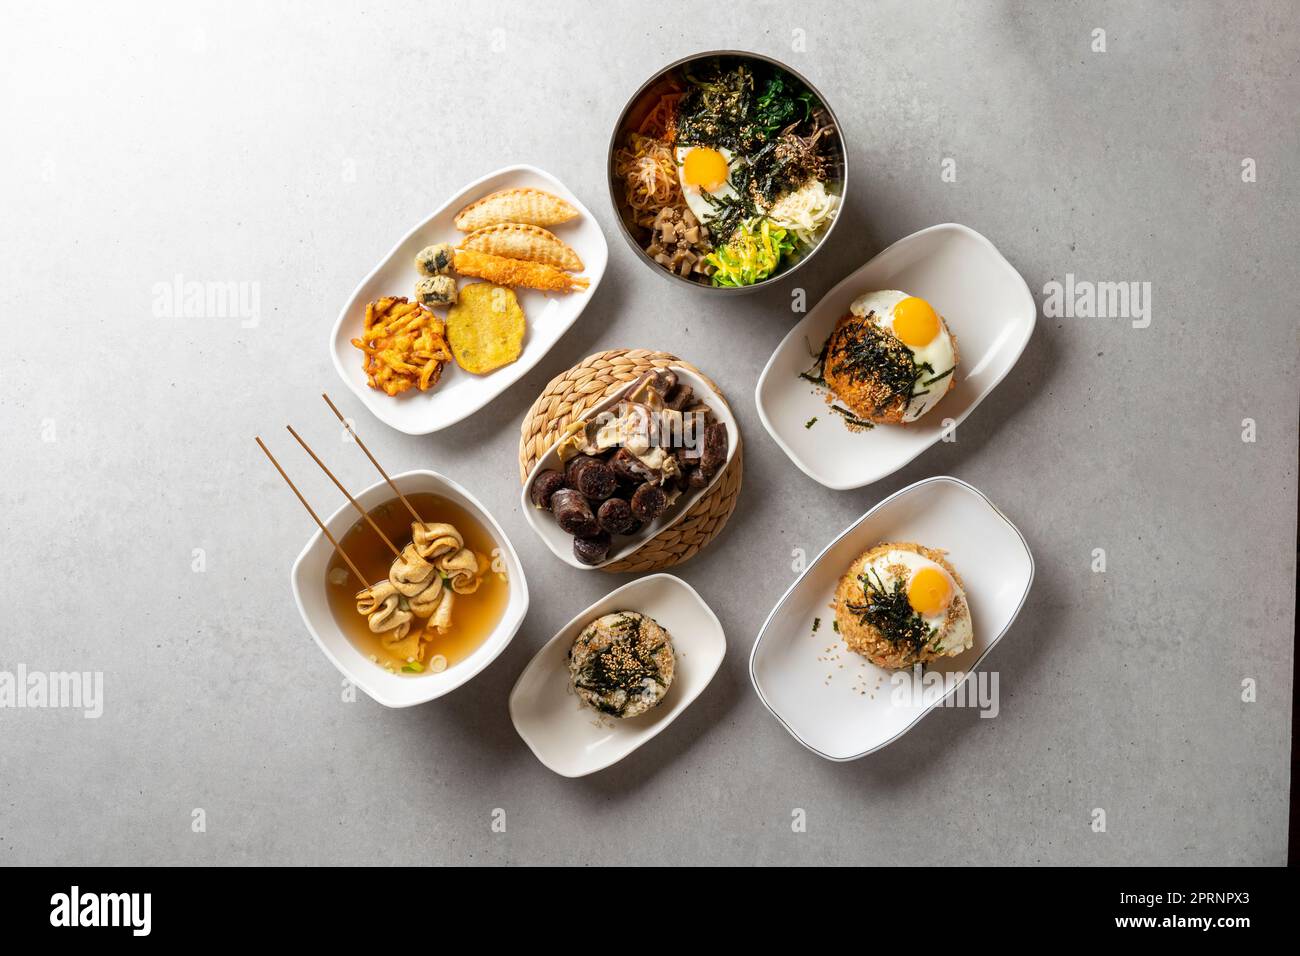 Assortiment de beignets plats coréens anchois boules de riz rouleaux d'algues yangpun bibimbap blé Tteokbokki saucisse coréenne avec riz doux fruits de mer Banque D'Images